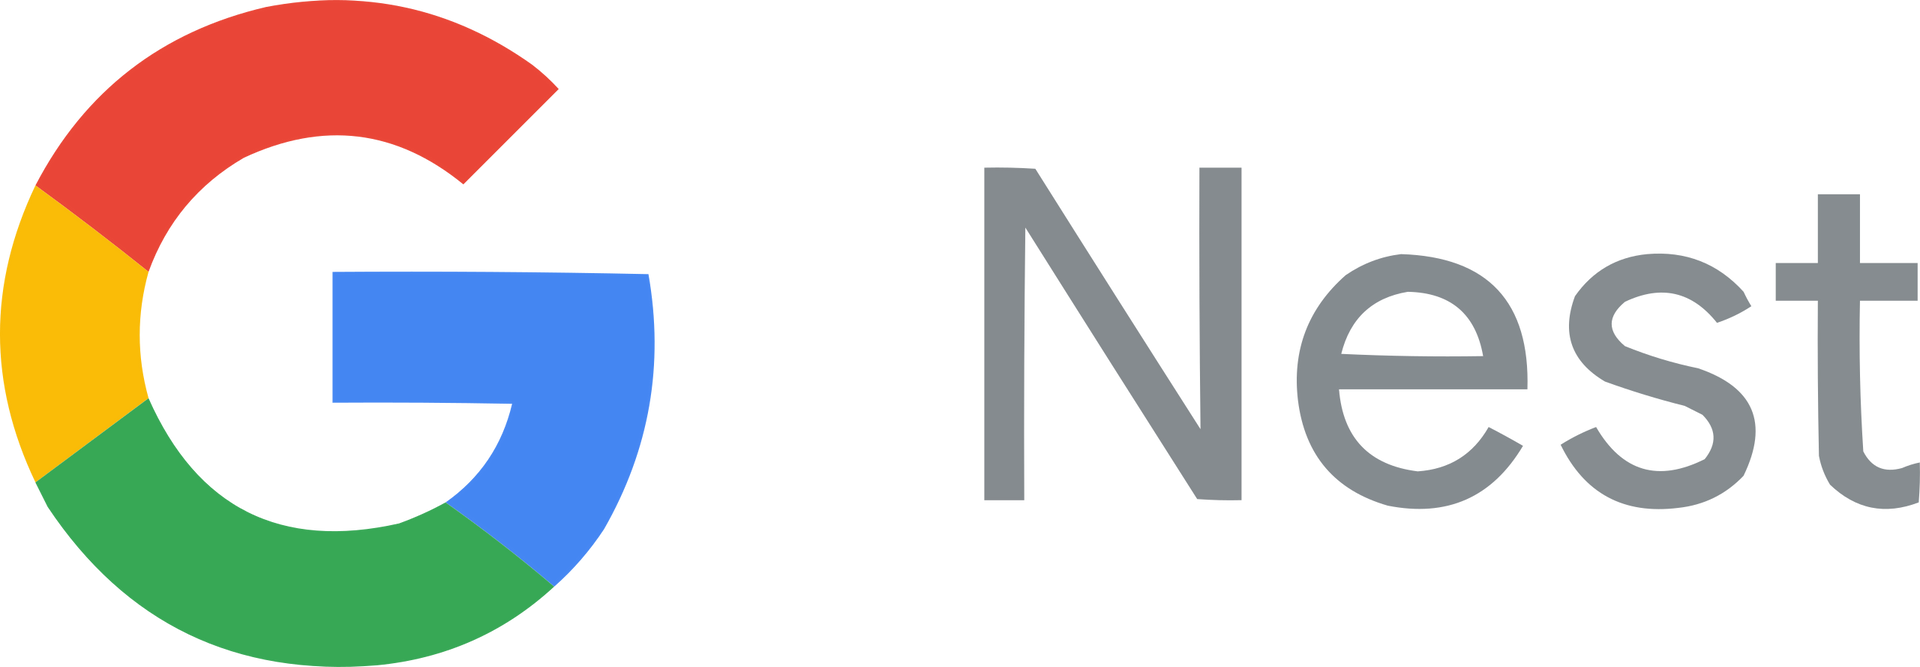 G Nest  logo